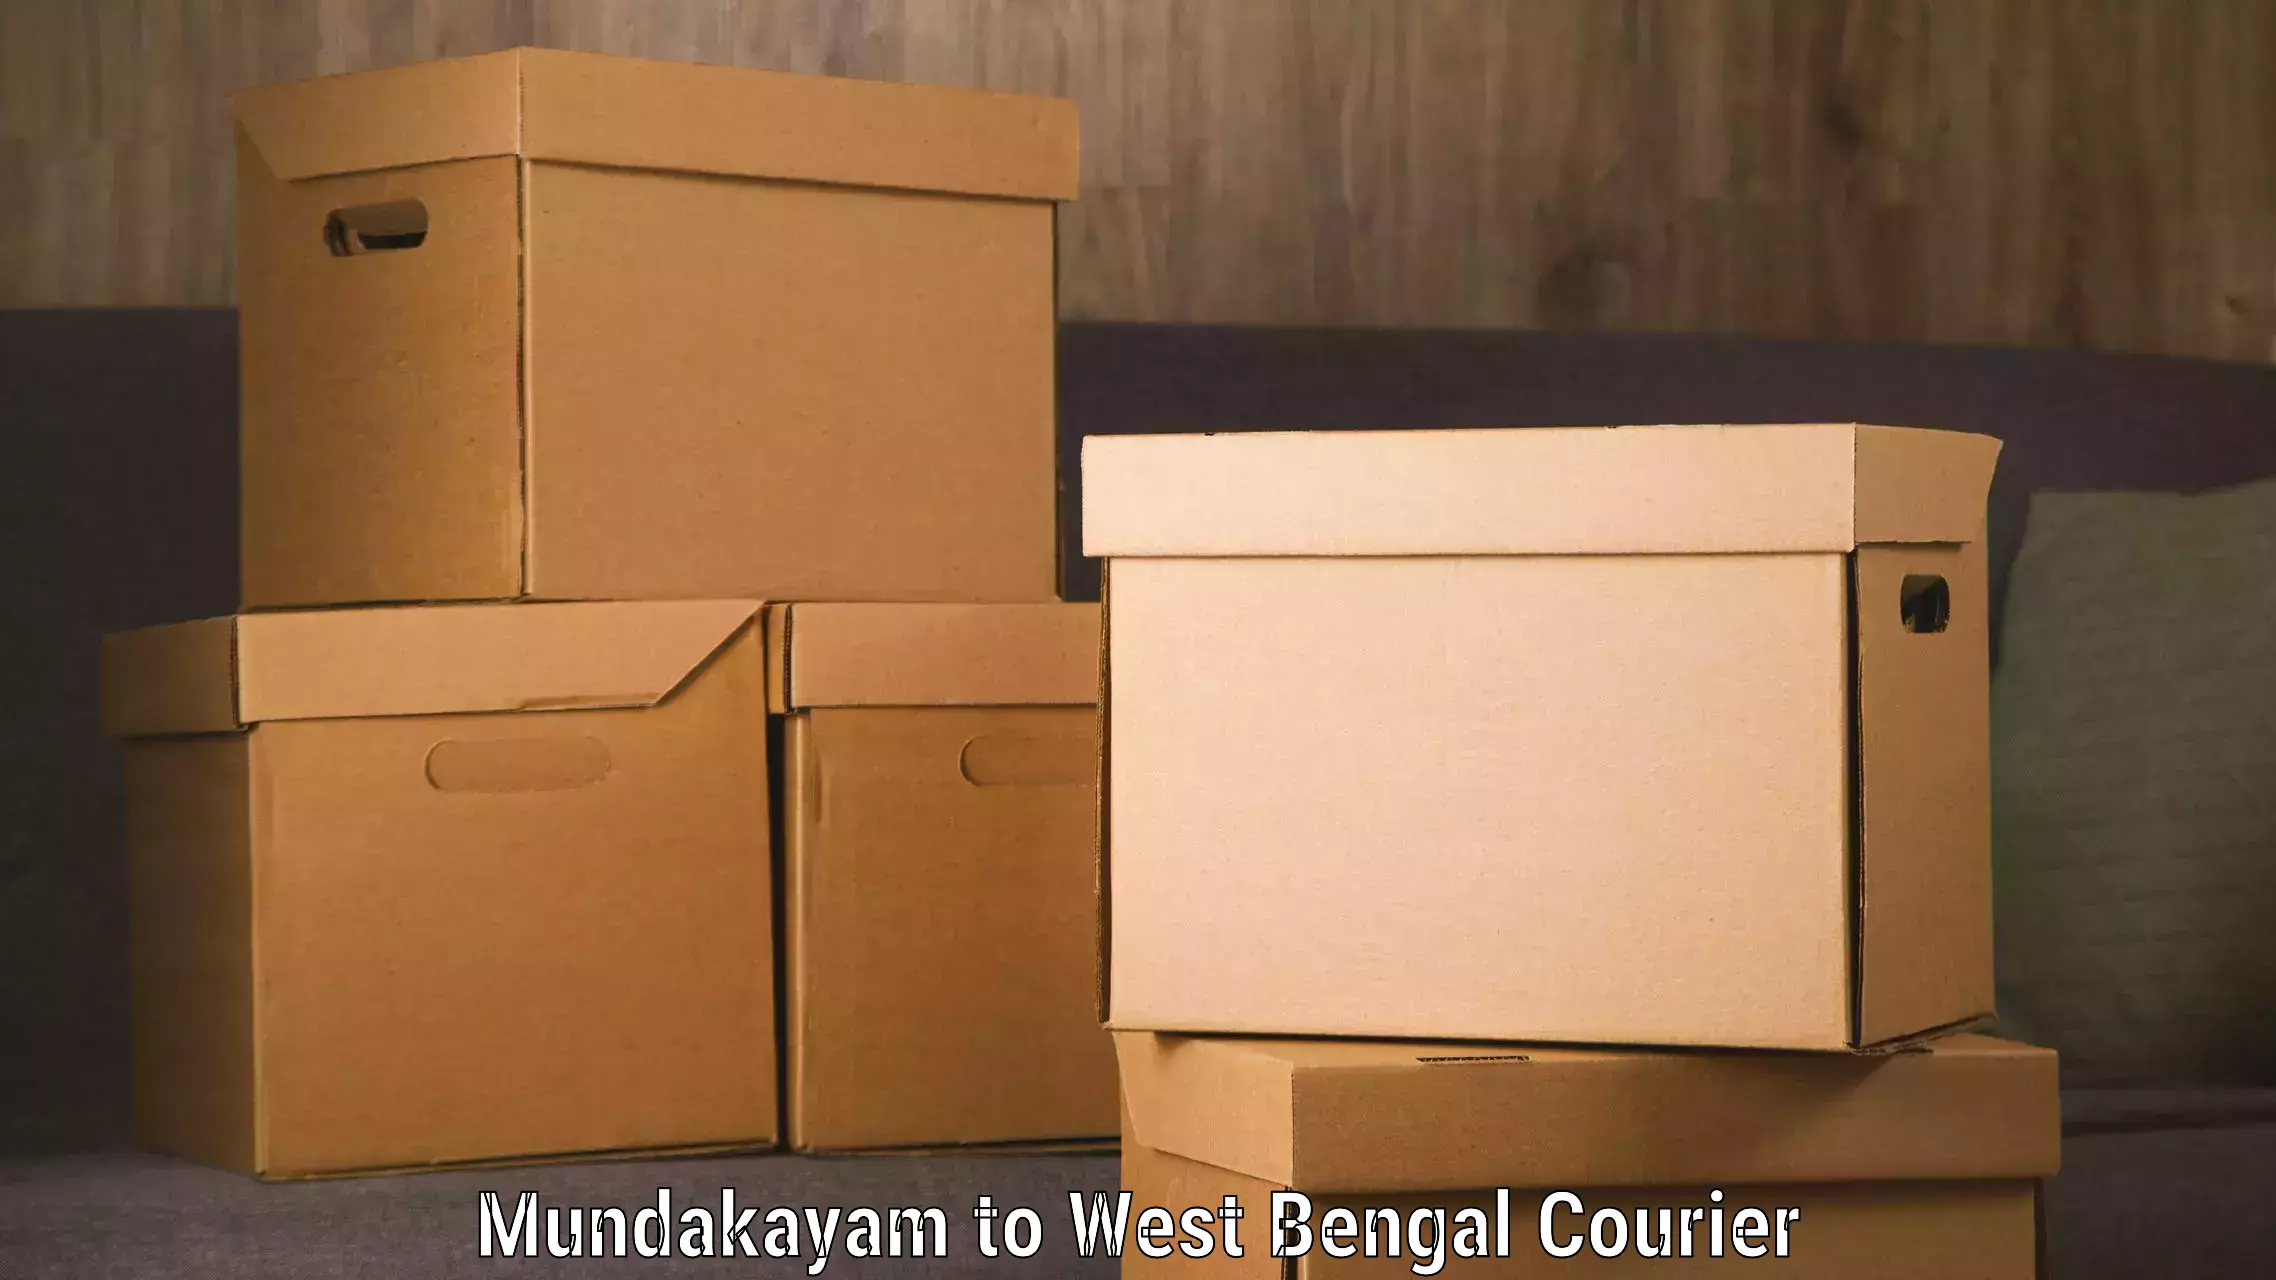 Fast-track shipping solutions Mundakayam to Maheshtala